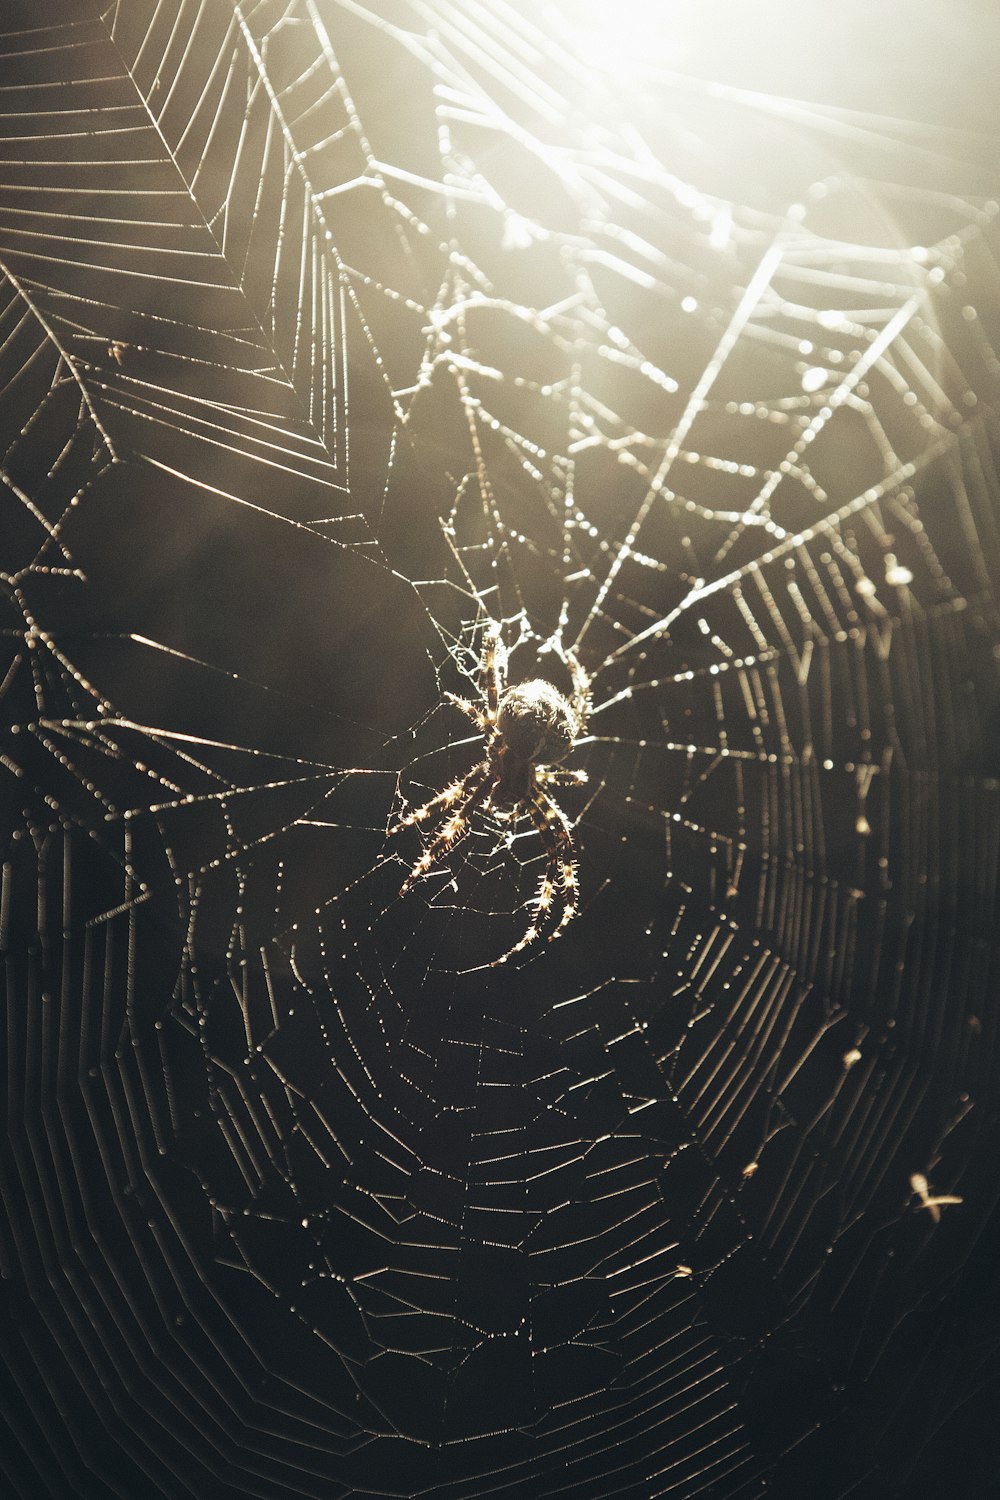 Eine Spinne sitzt in der Mitte eines Spinnennetzes